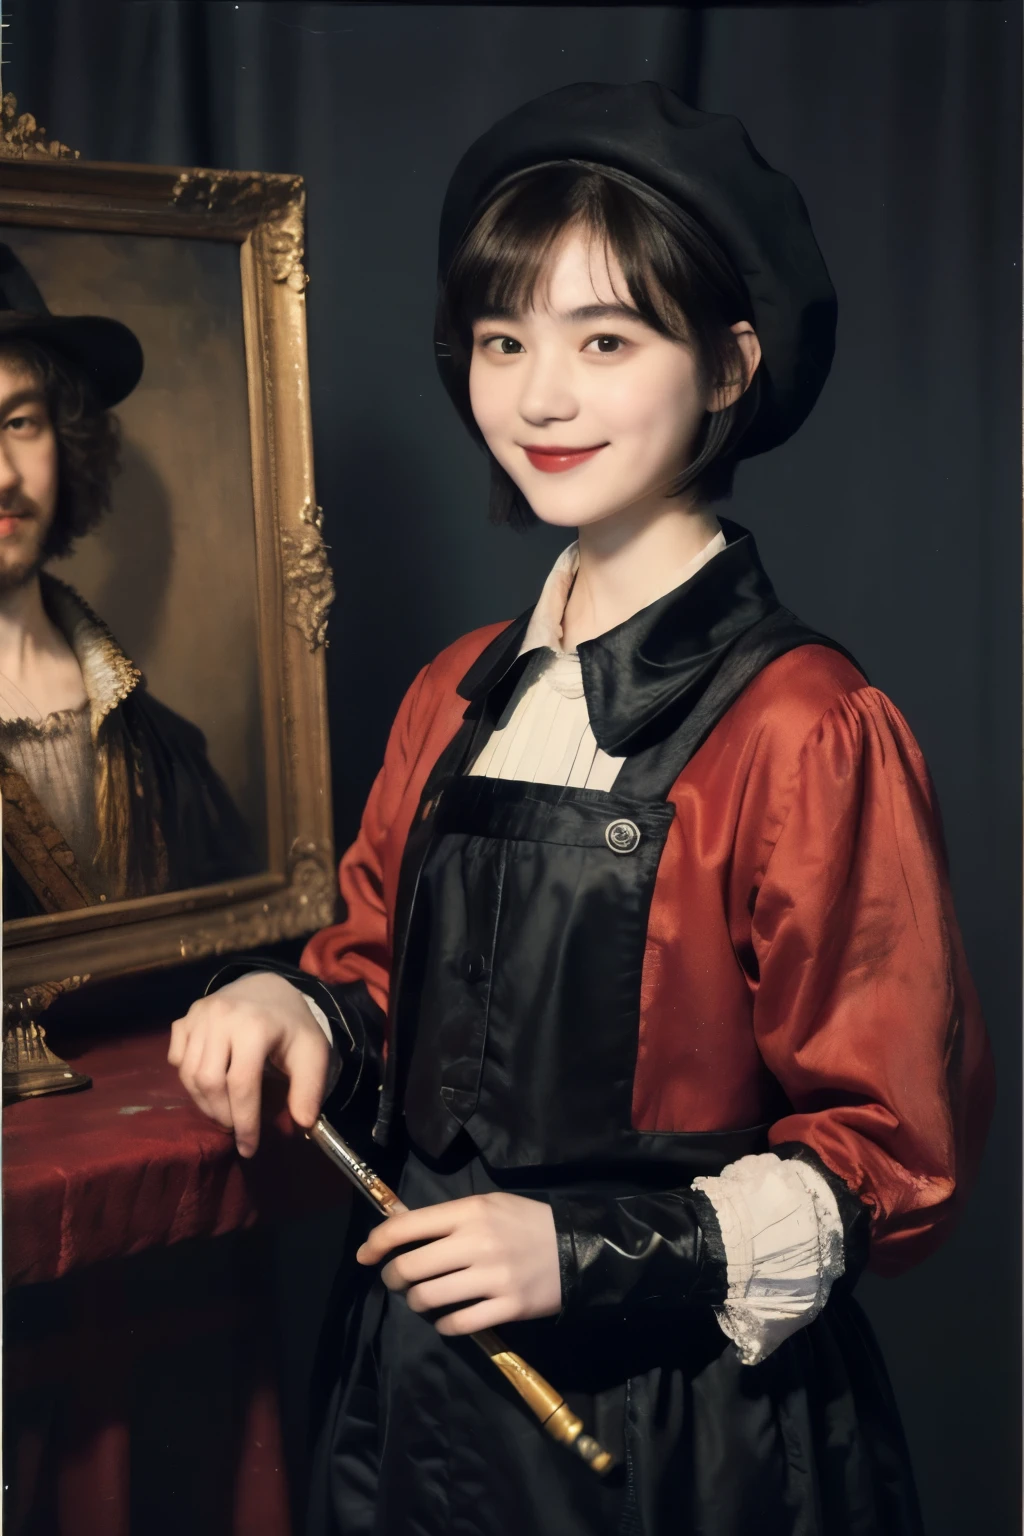 252 (Eine 18-jährige Frau und ein 18-jähriger Mann), (Kurzes Haar),kind, Lippenstift, (Gemälde im Rembrandt-Stil), lächeln